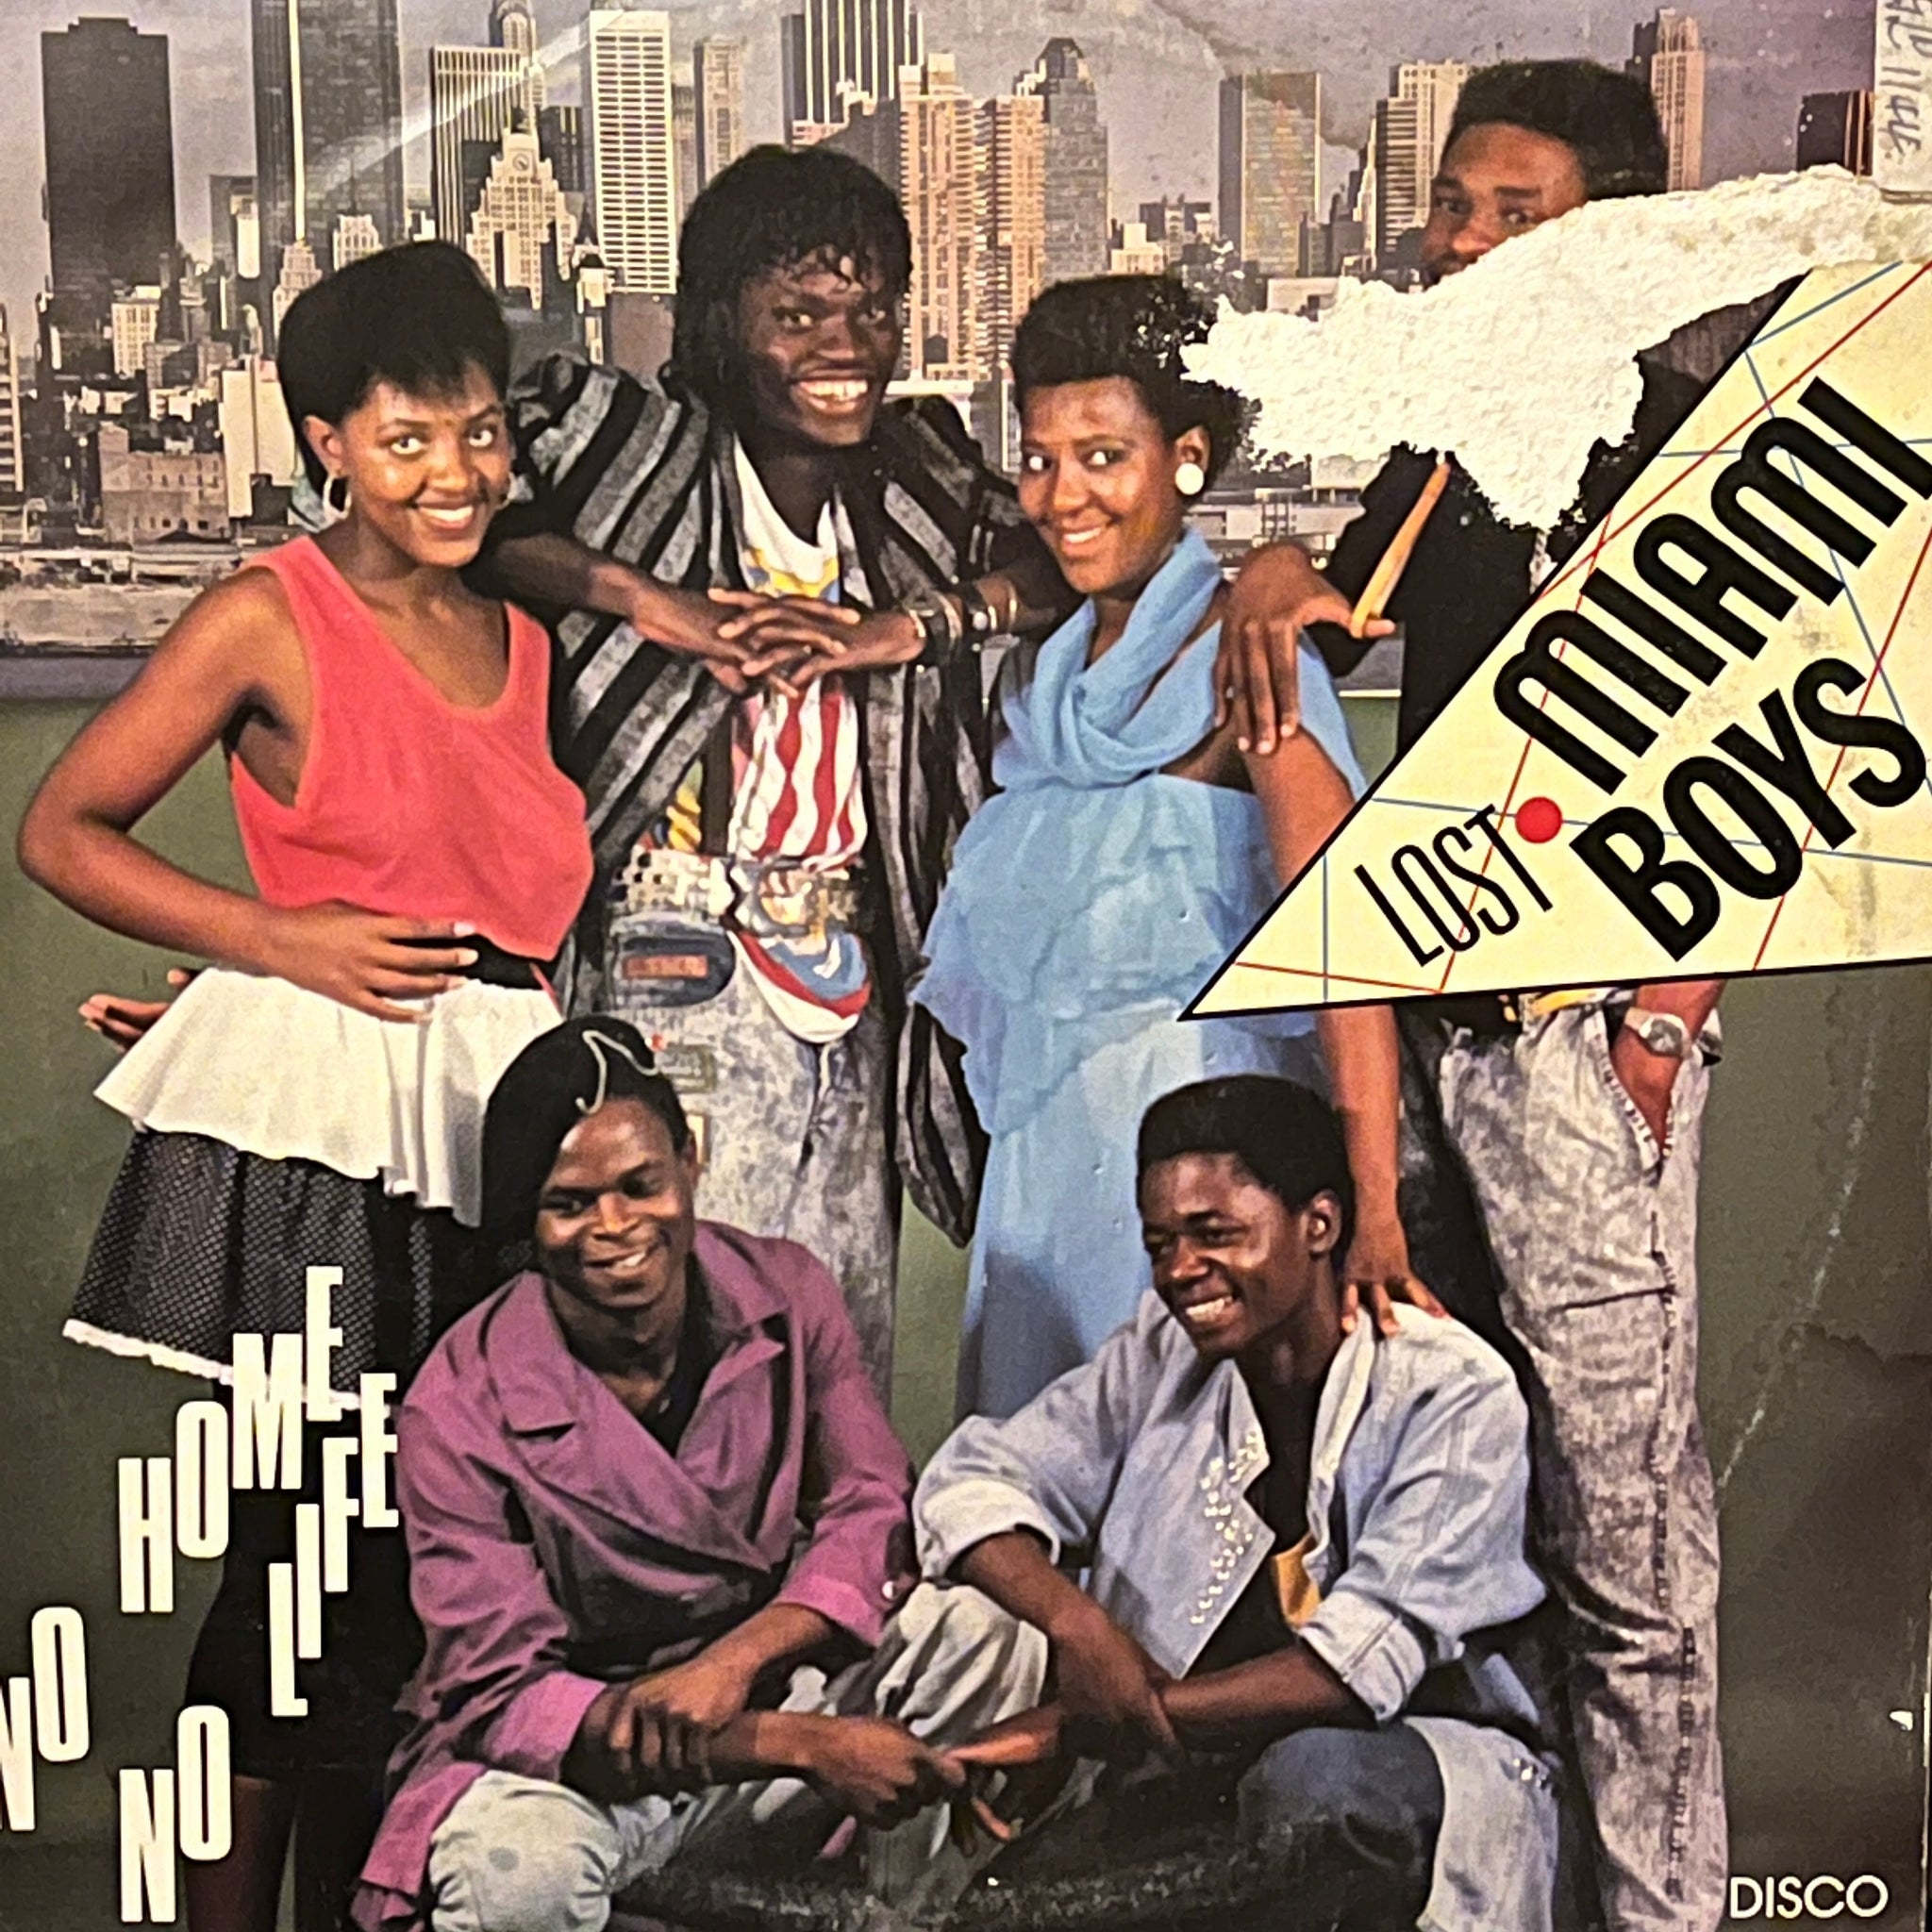 Lost Miami Boys – No Home No Life